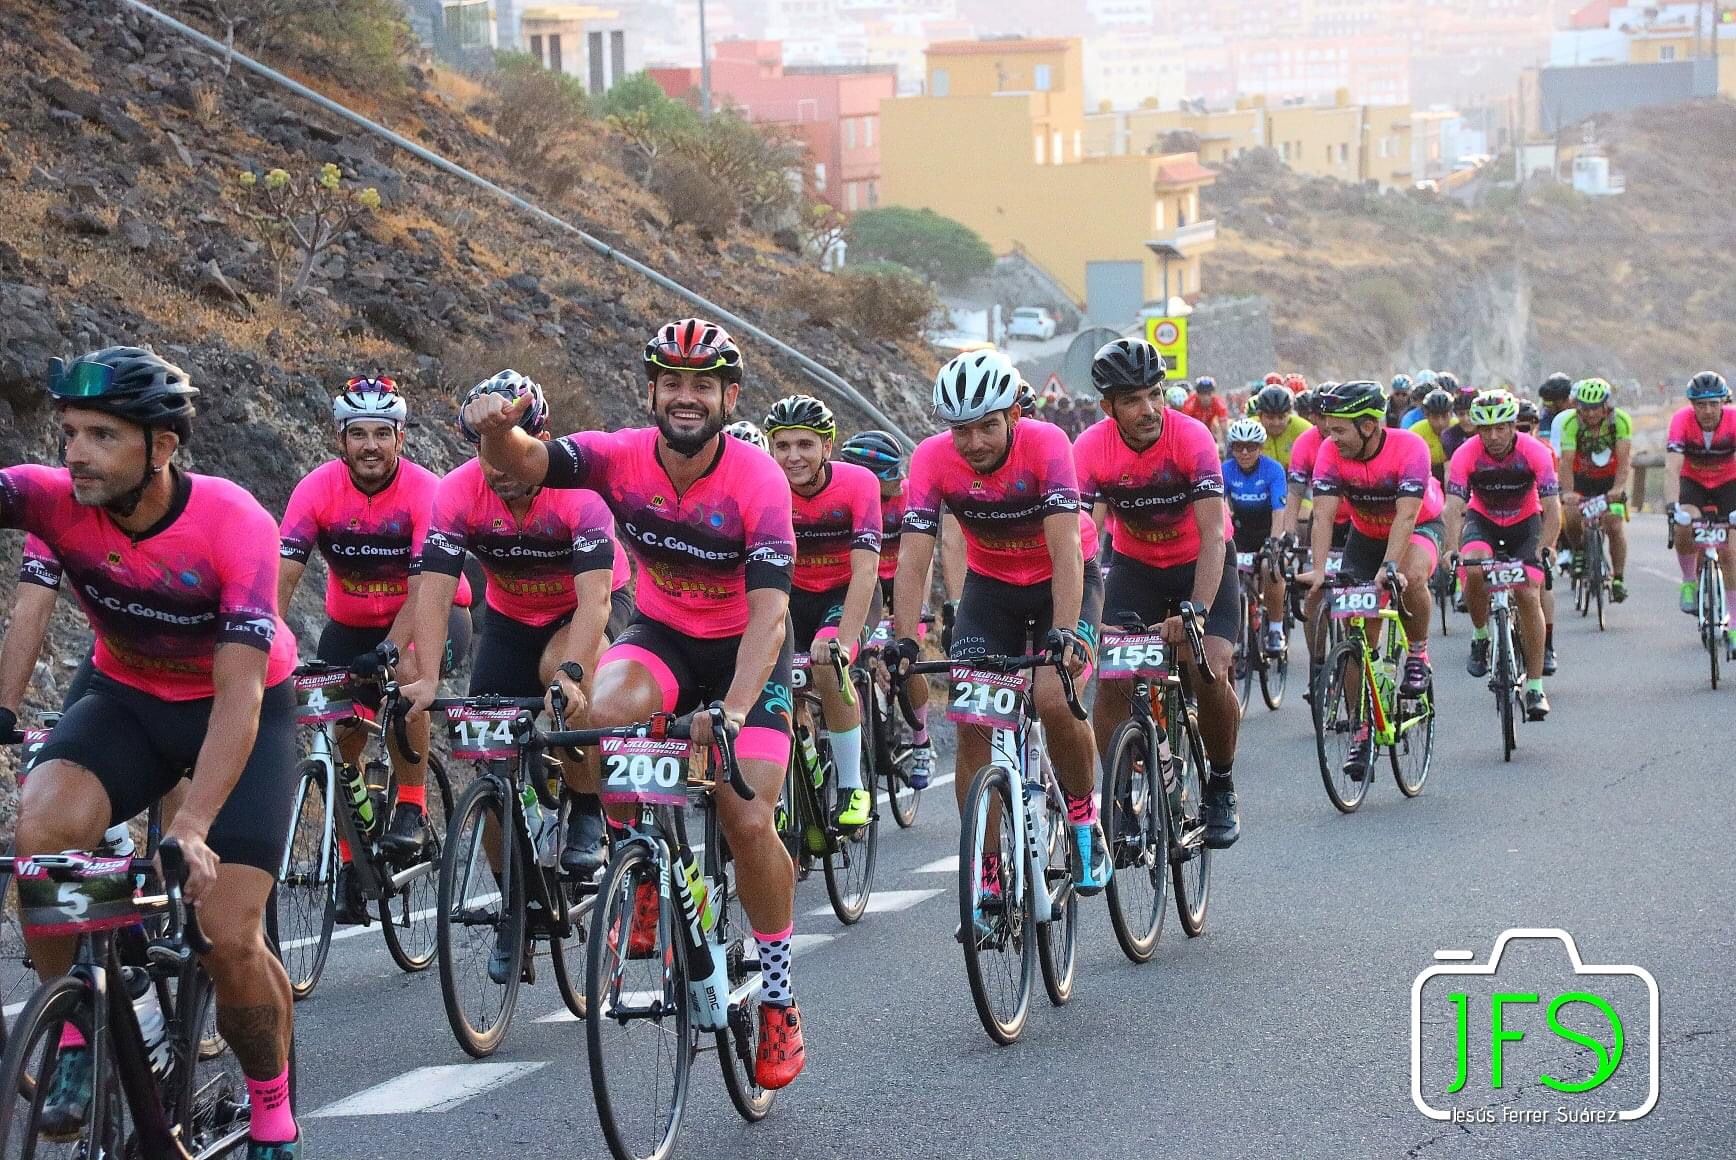 La Cicloturista de La Gomera volvió al ruedo con más de 200 inscritos, en un evento que se canceló el pasado año por el covid19.